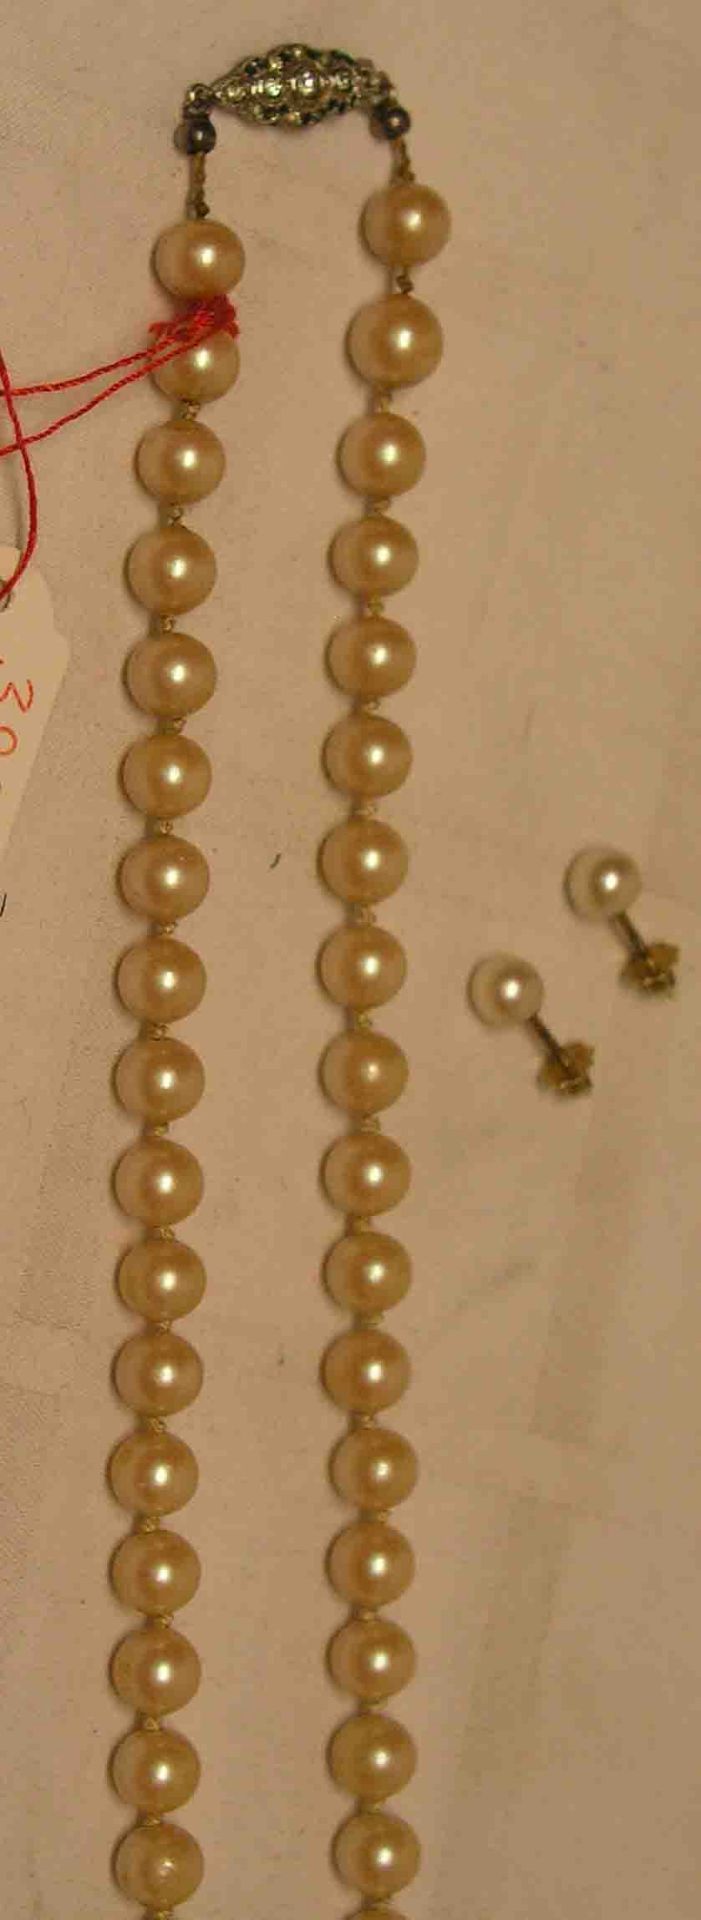 Drei Teile Schmuck. Dabei: Perlenkette, einzeln geknotet, Silberverschluss, Länge: 54cm.Paar